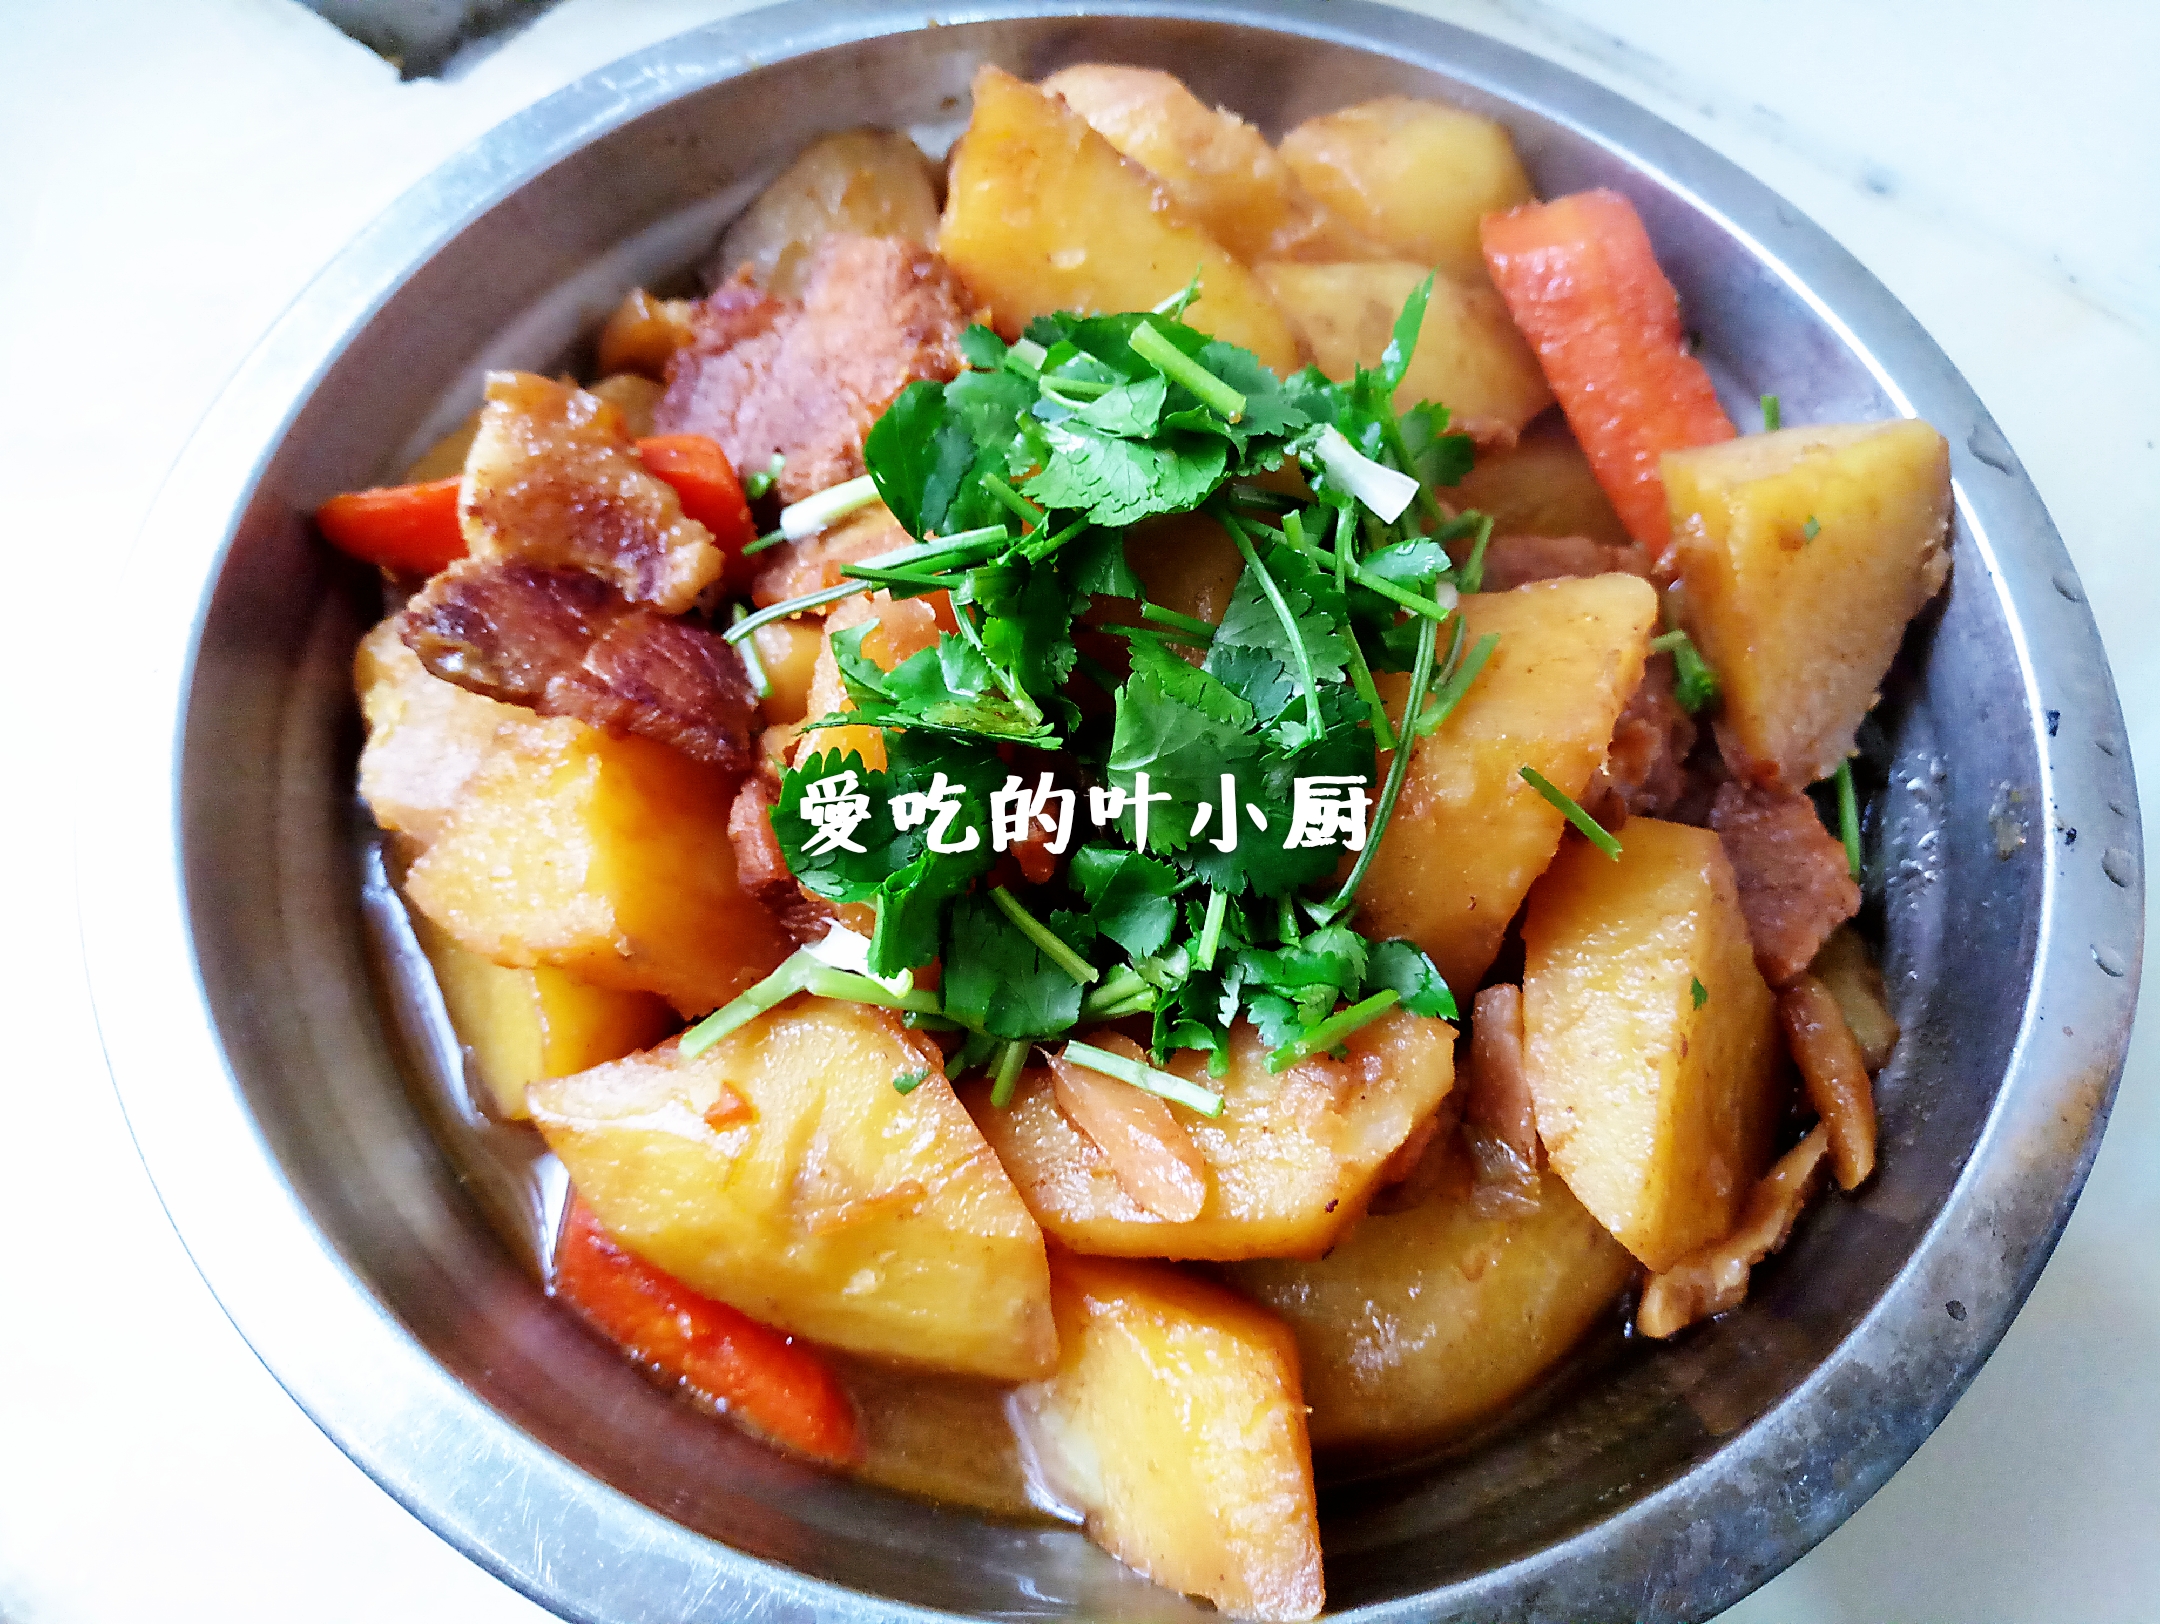 猪肉炖土豆虽然说是道很常见的家常菜,但是依然有很多人觉得这道菜做